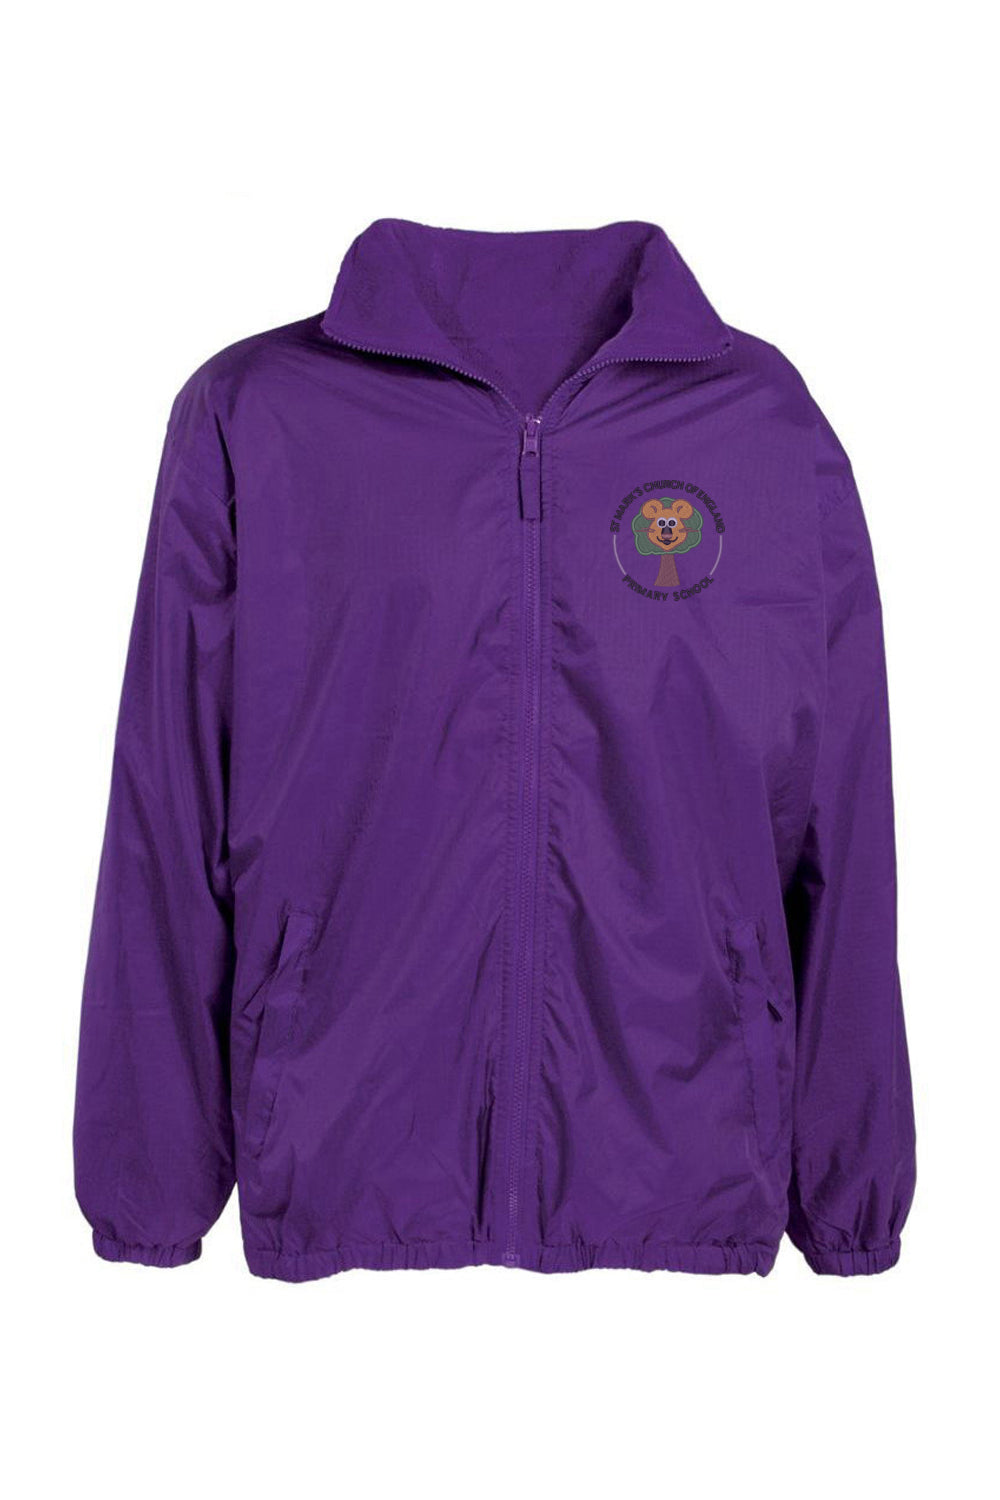 St. Mark's Elm Tree Purple Shower Jacket